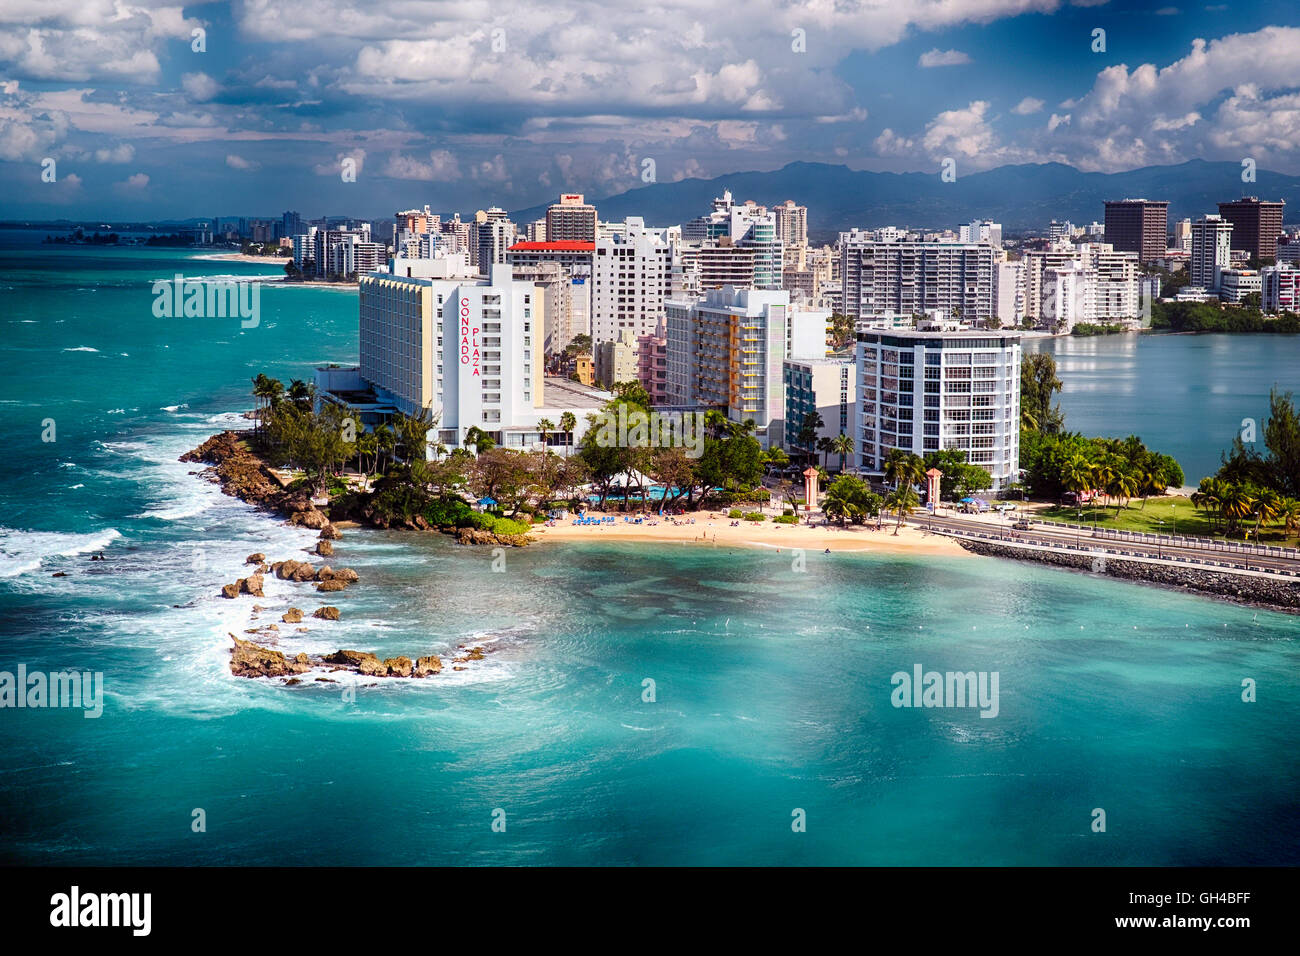 Elevato angolo di visione di un litorale con alberghi e una spiaggia, il Condado, San Juan, Puerto Rico Foto Stock